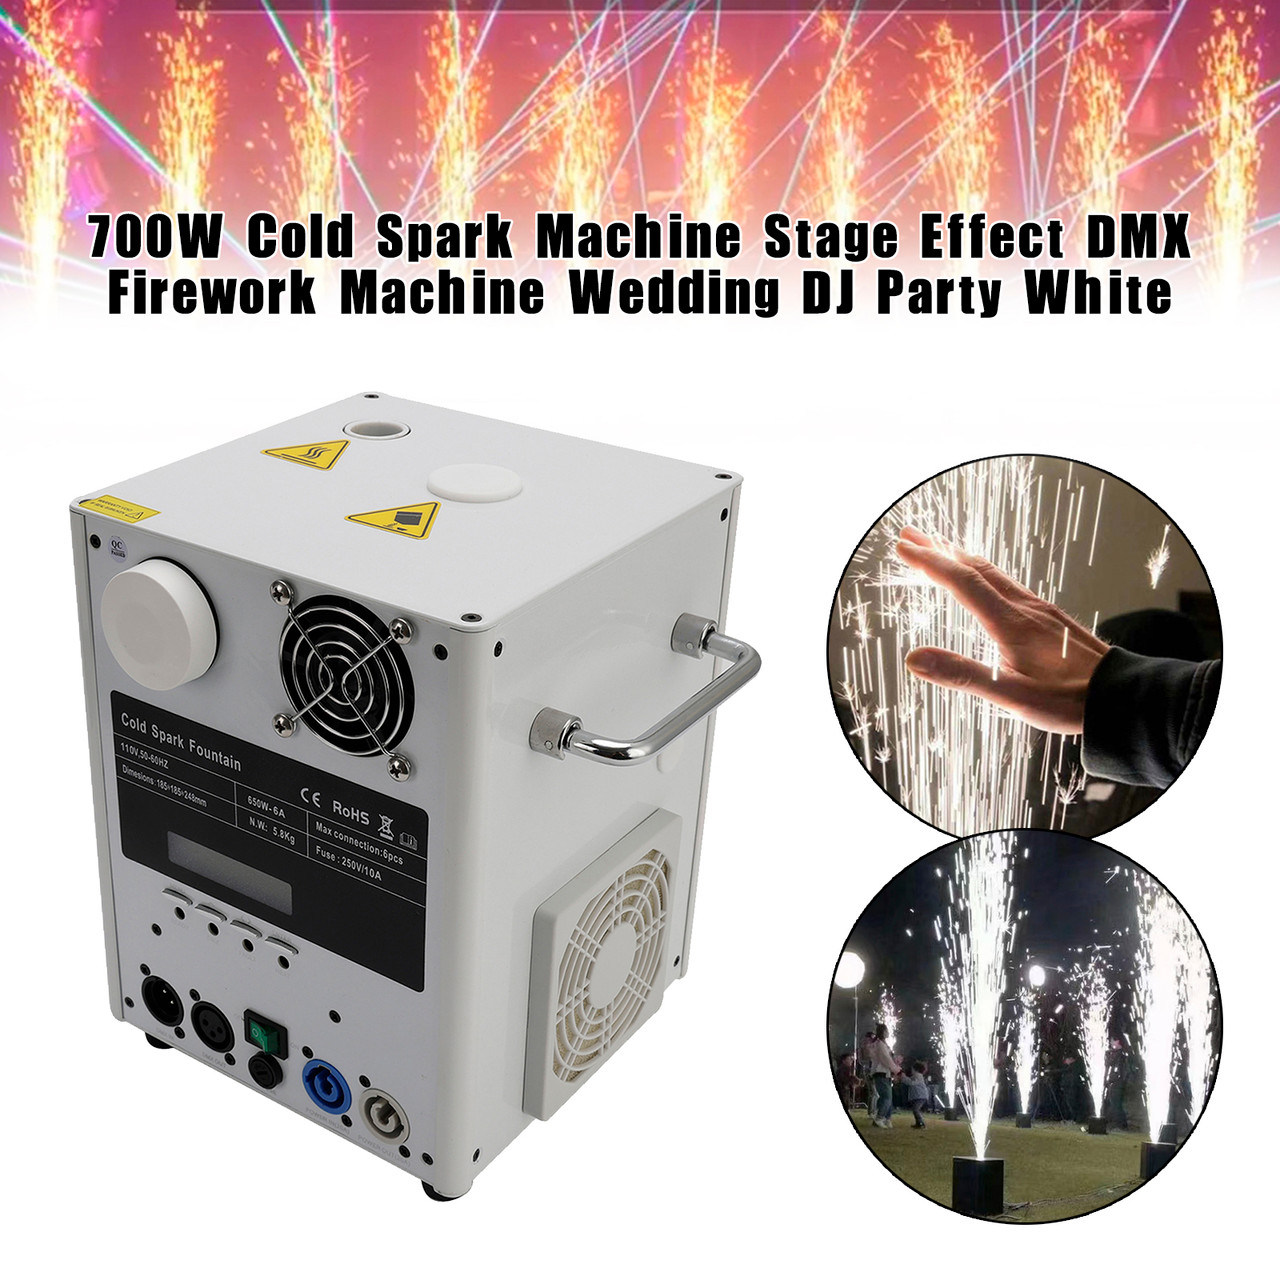 700W Cold Spark Machine Stage Effect DMX Firework Machine Wedding DJ Party White